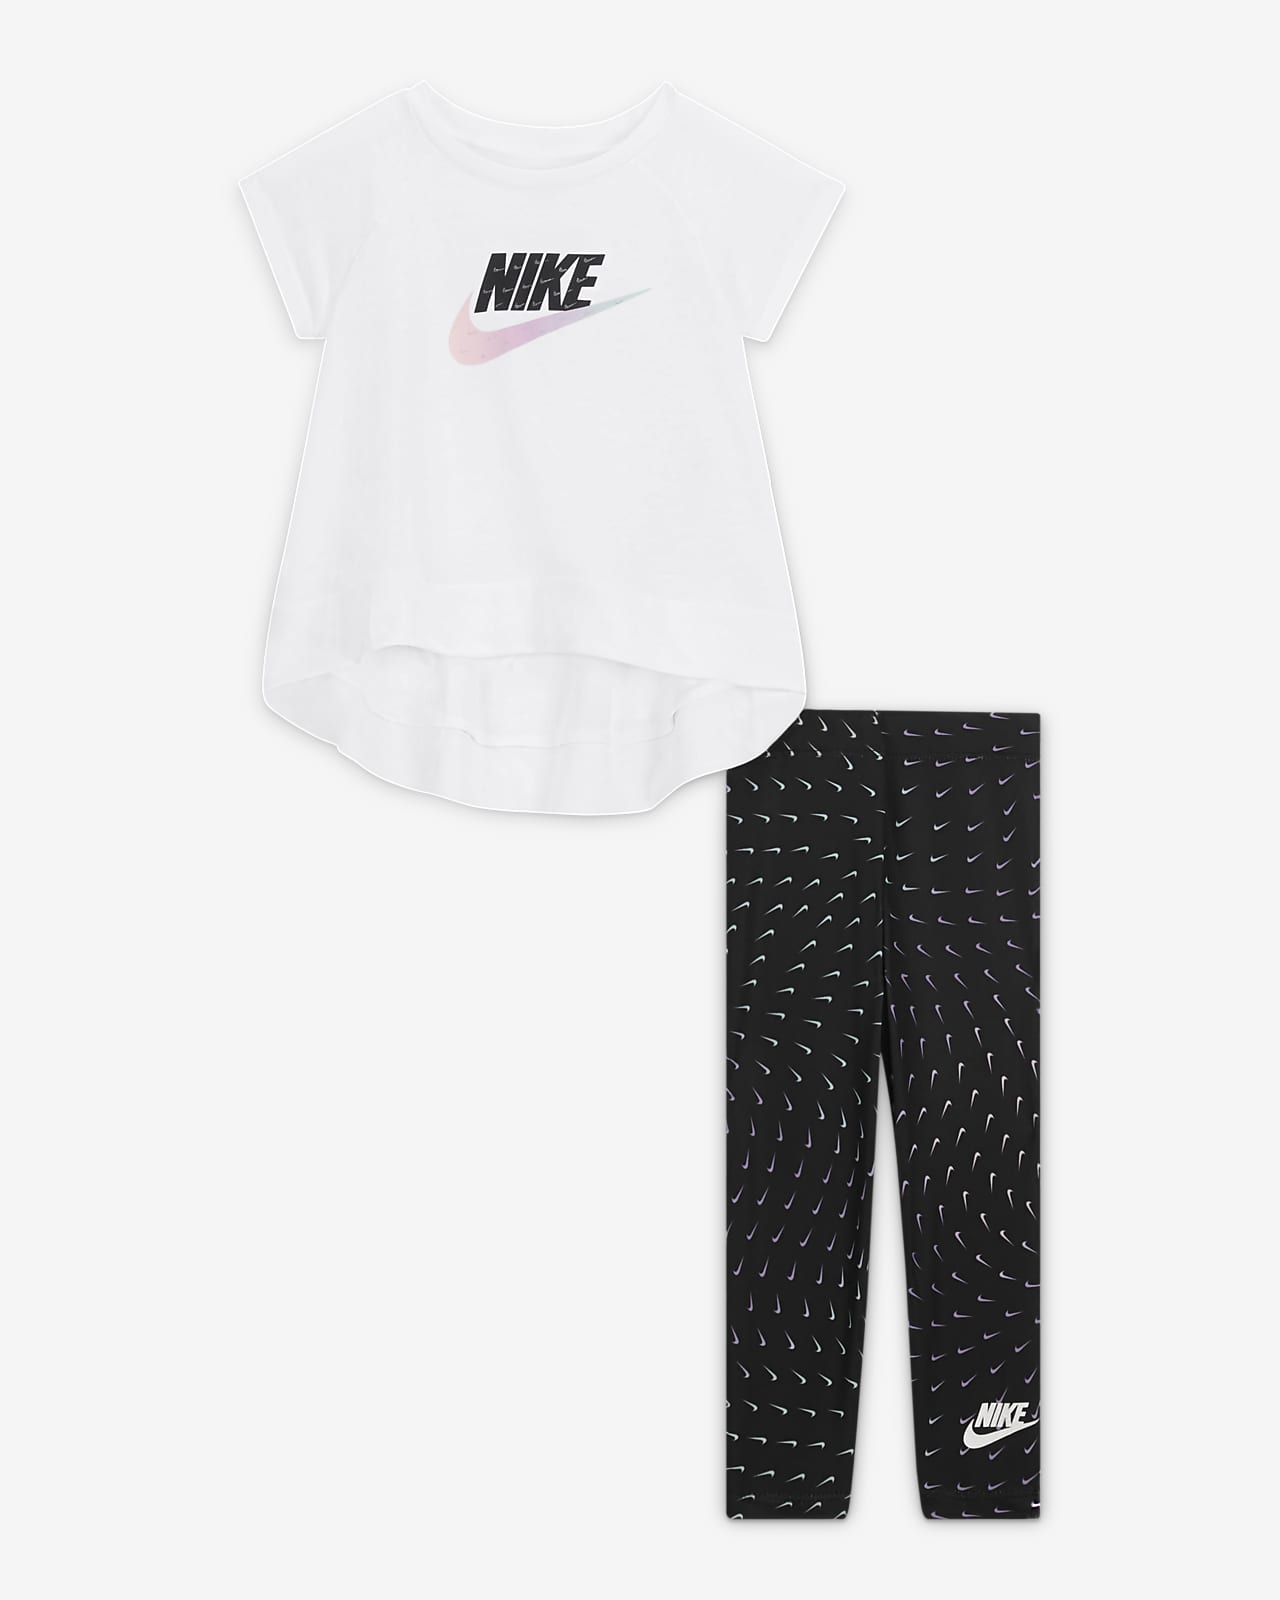 Generoso Persona australiana Mujer Nike Conjunto de camiseta y leggings - Bebé (12-24M). Nike ES